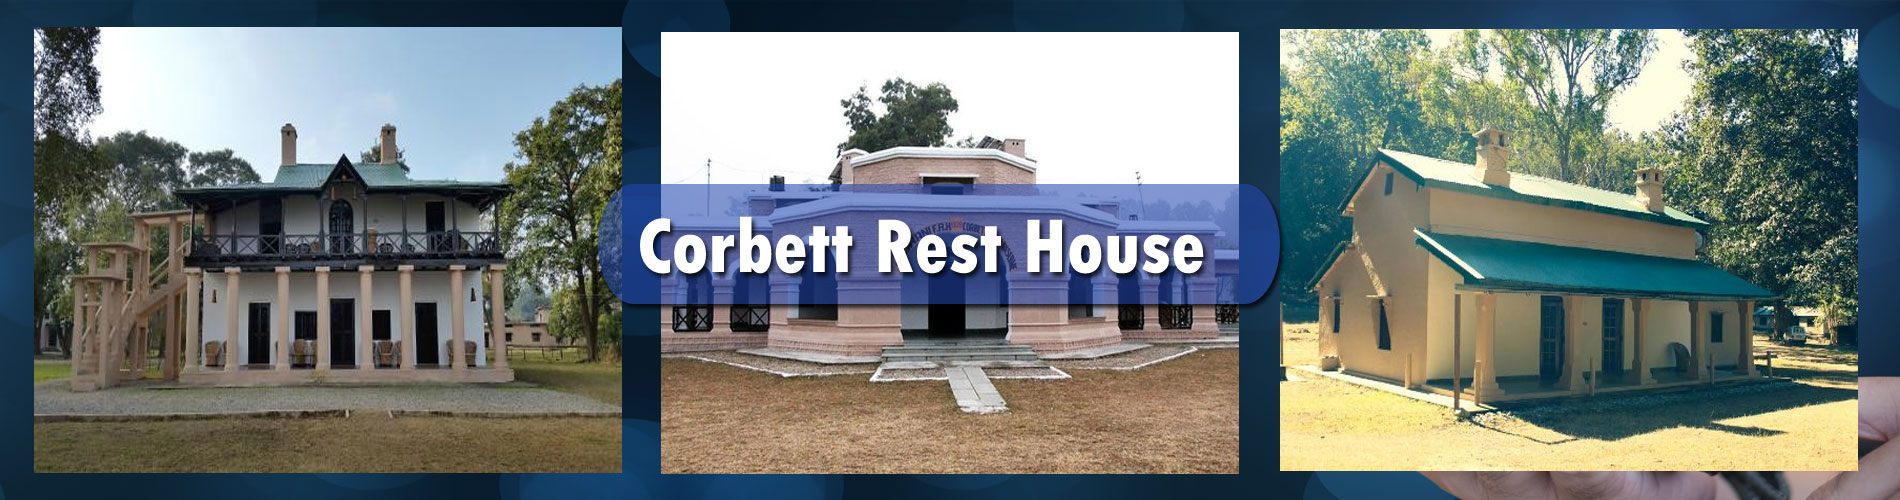 Corbett Rest House